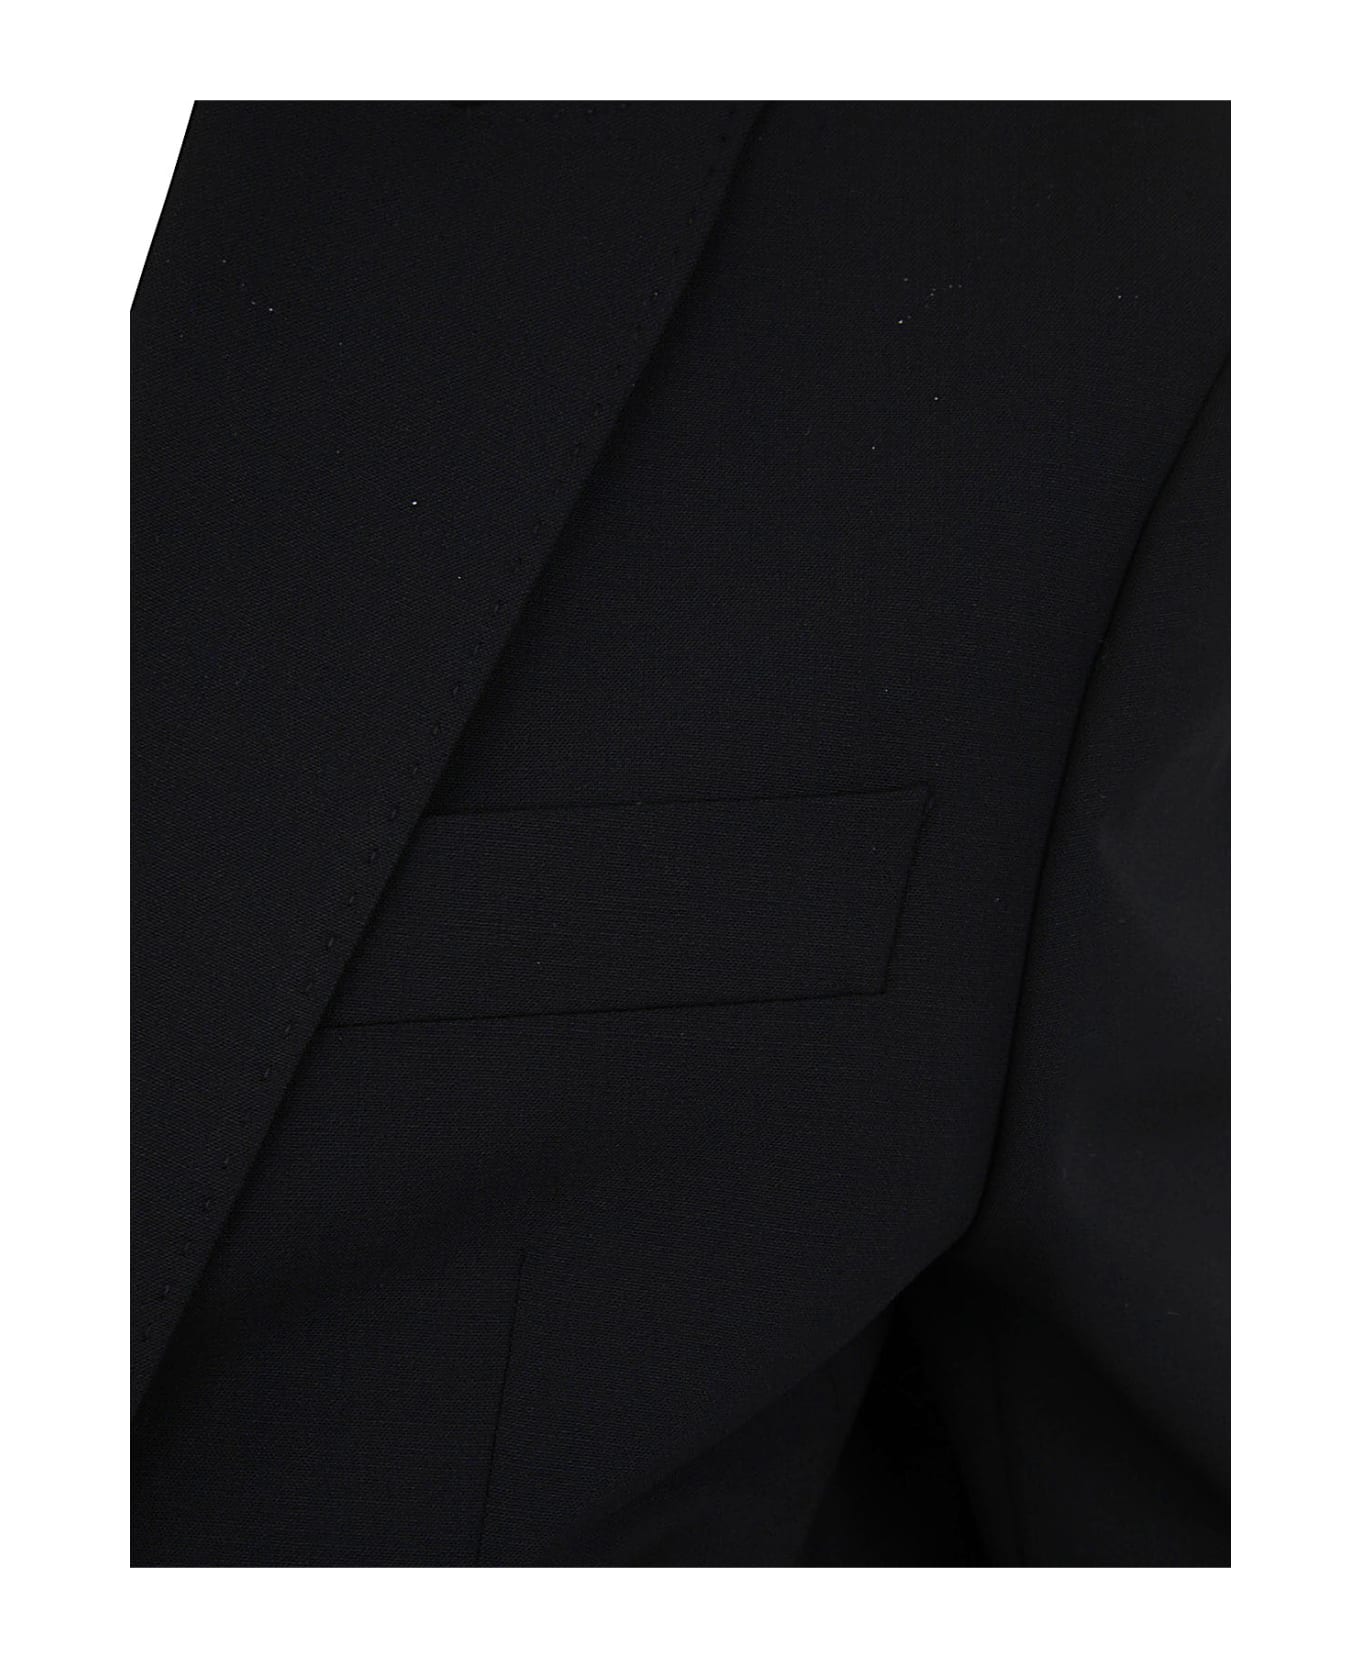 Dsquared2 Tokyo Suit - Black